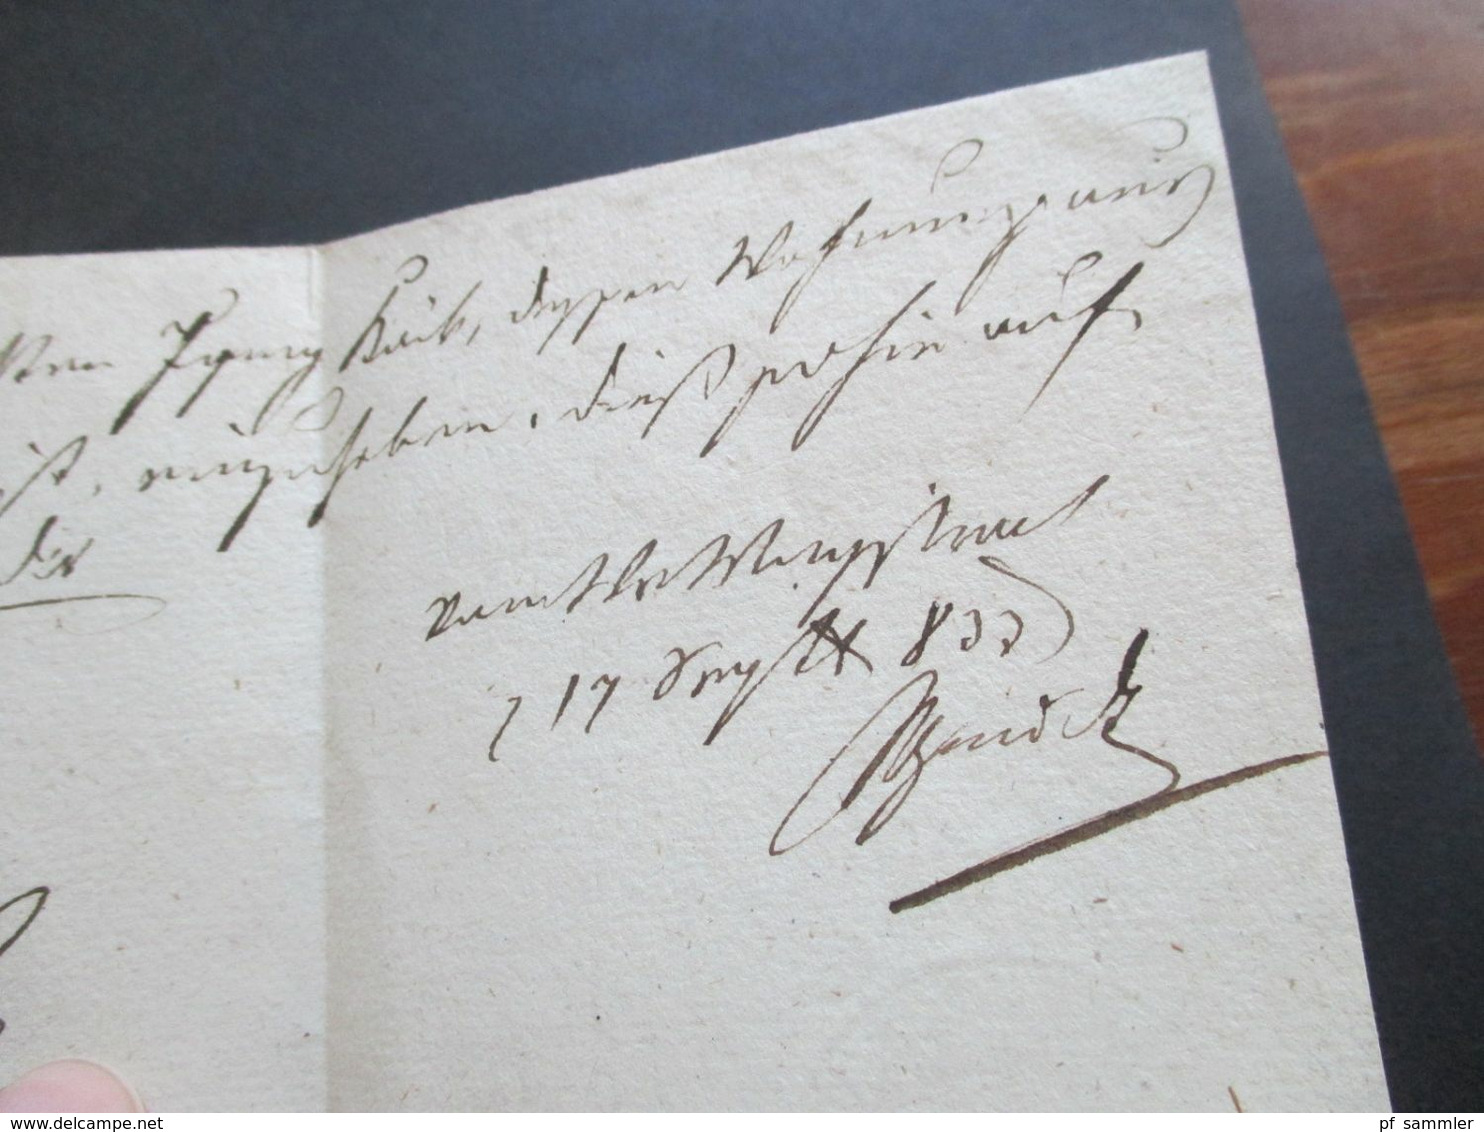 Österreich 11.9.1833 Dienstbrief mit vielen Stempeln und Vermerken u.a. Ra 1 Wien : Tax und oval Stp. Schw...